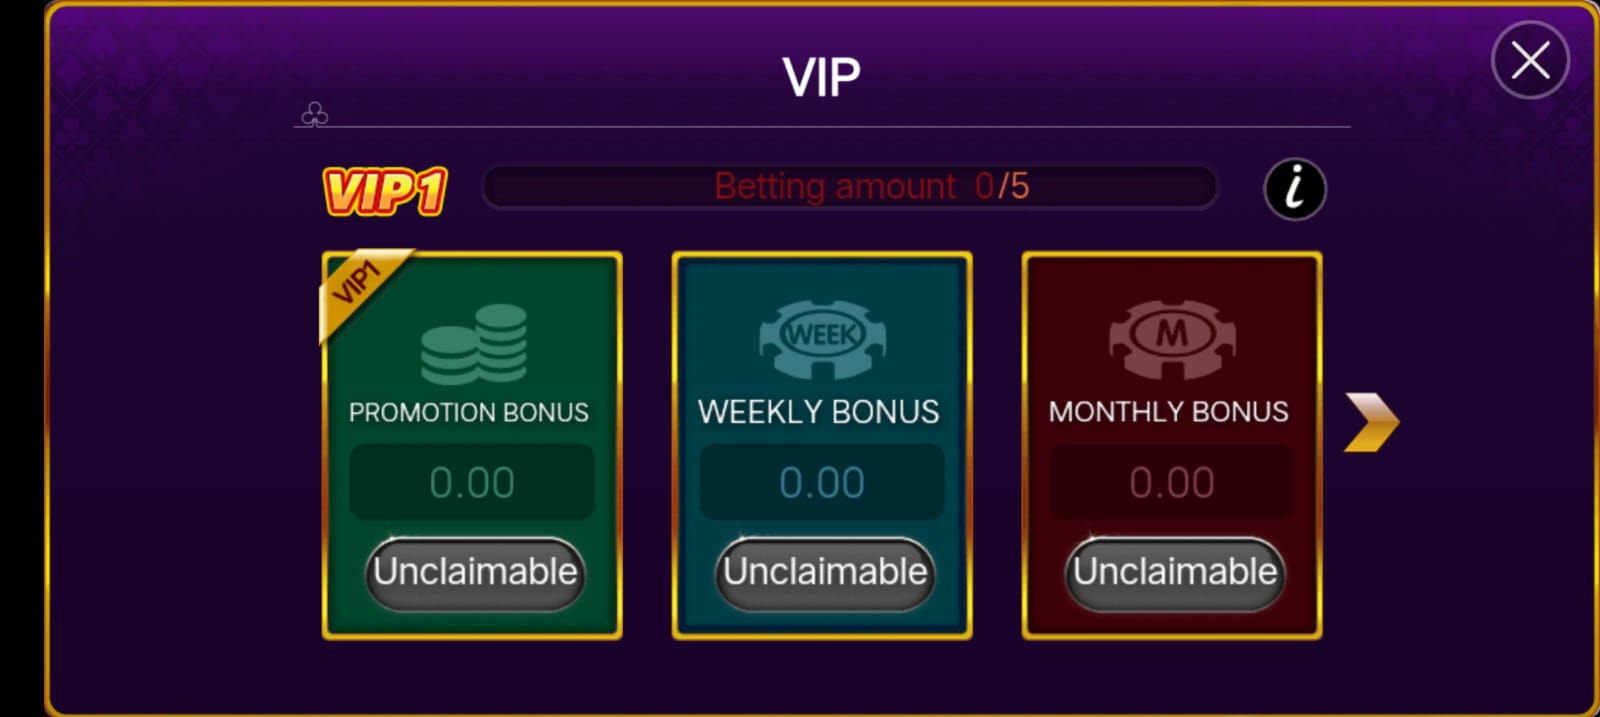 VIP Bonus In Rummy Ringo App